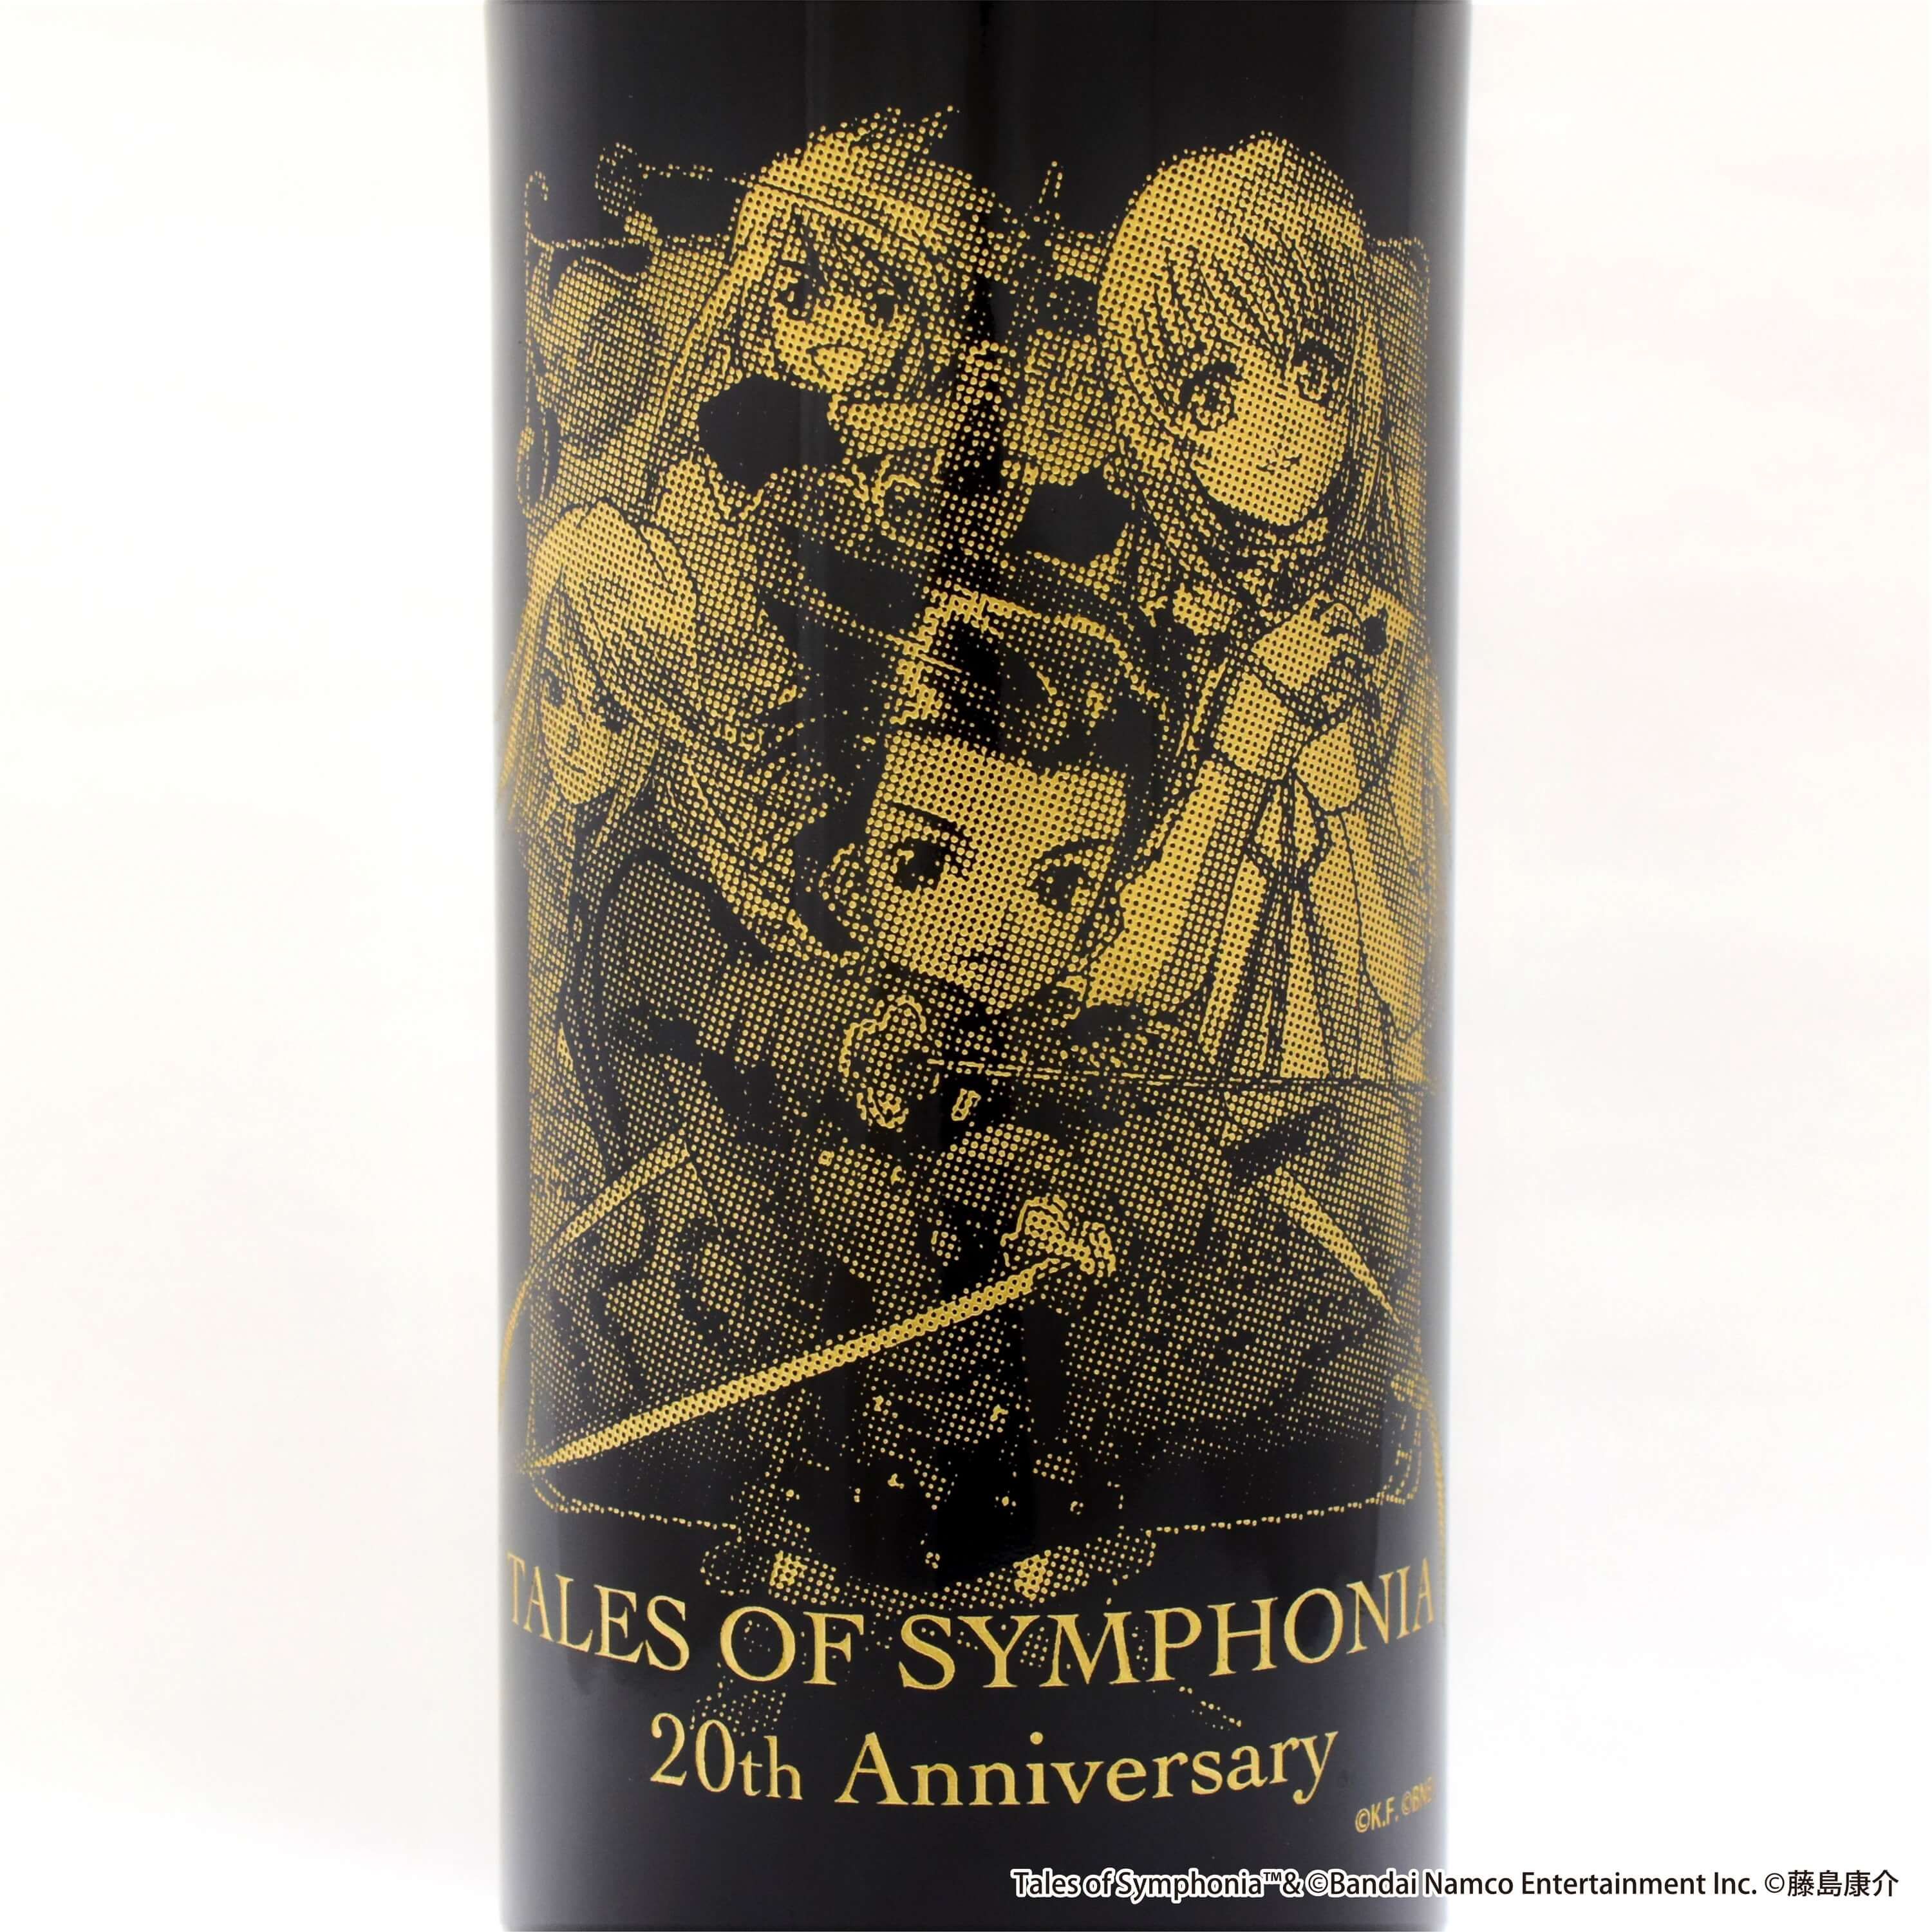 テイルズオブシンフォニア超特装 20周年記念ワイン 彫刻ボトル